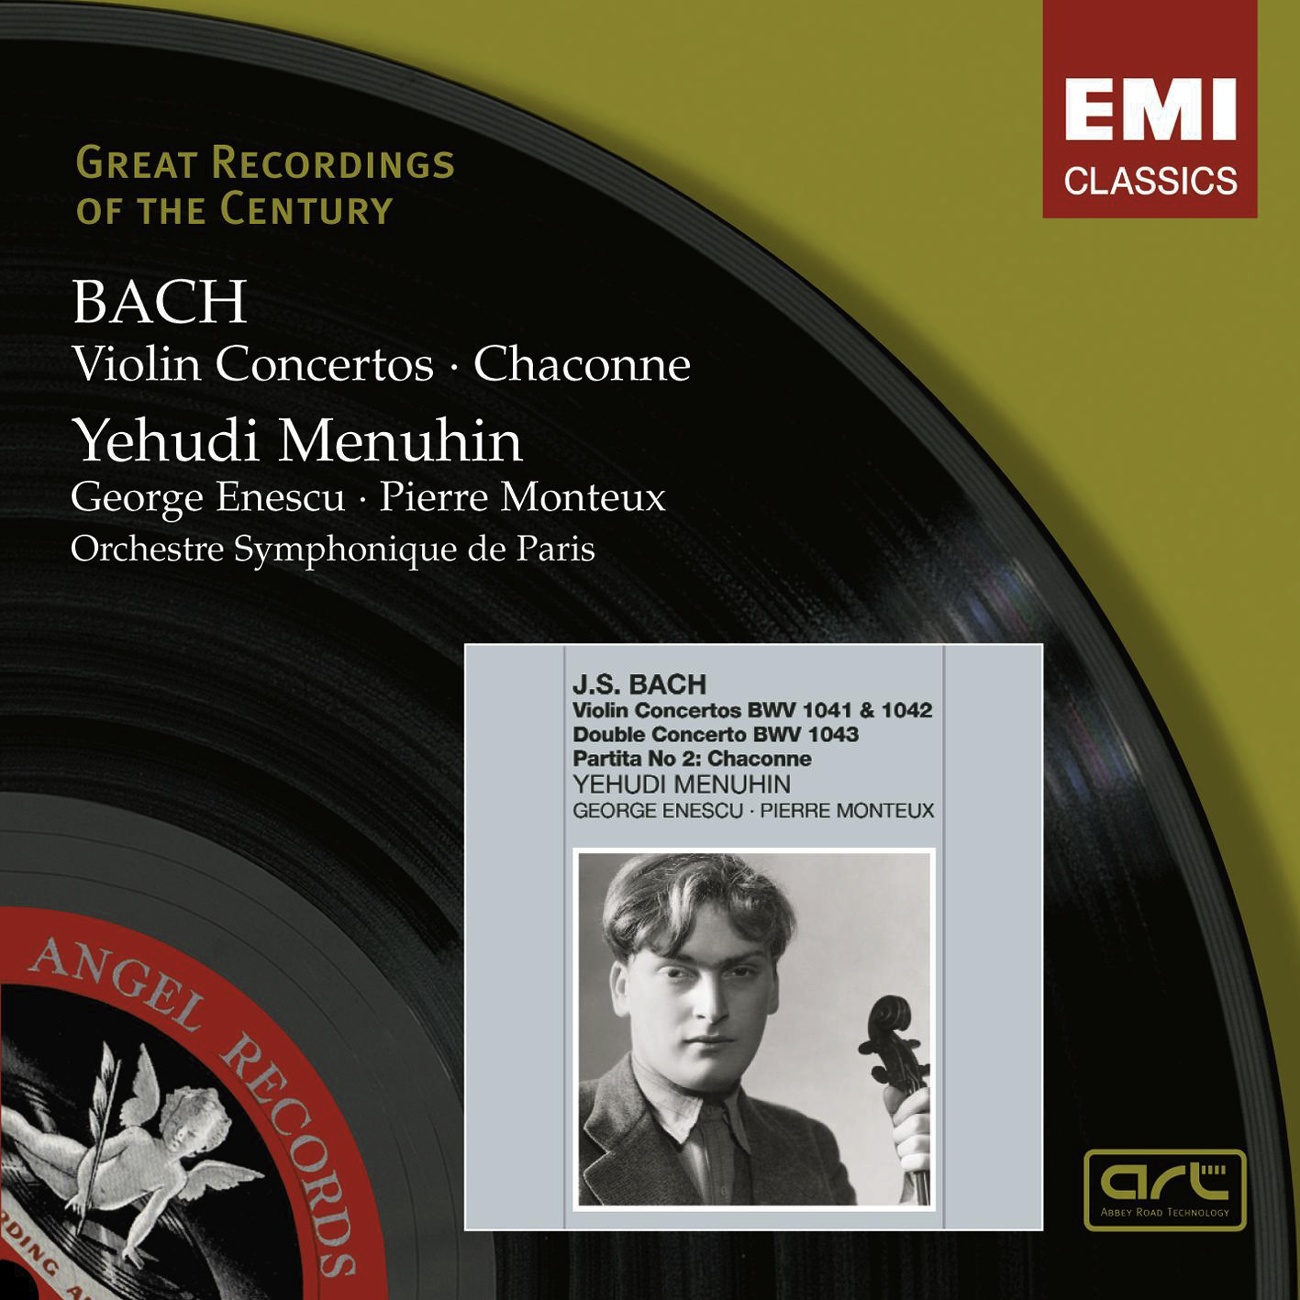 Violin Concerto in E, BWV 1042 (2007 Remastered Version): II. Adagio